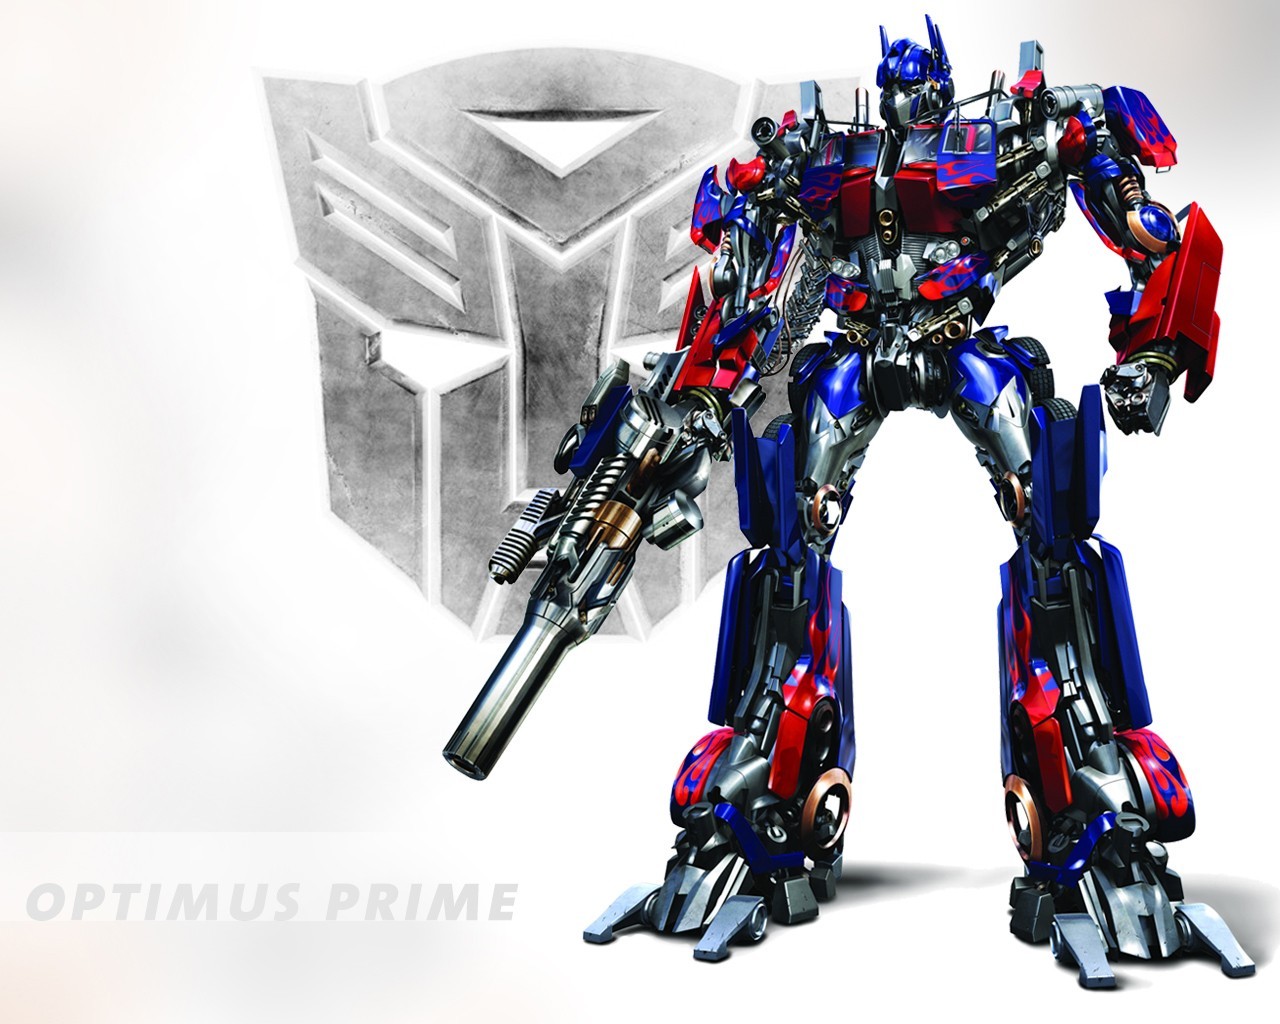 Optimus Prime Wallpaper